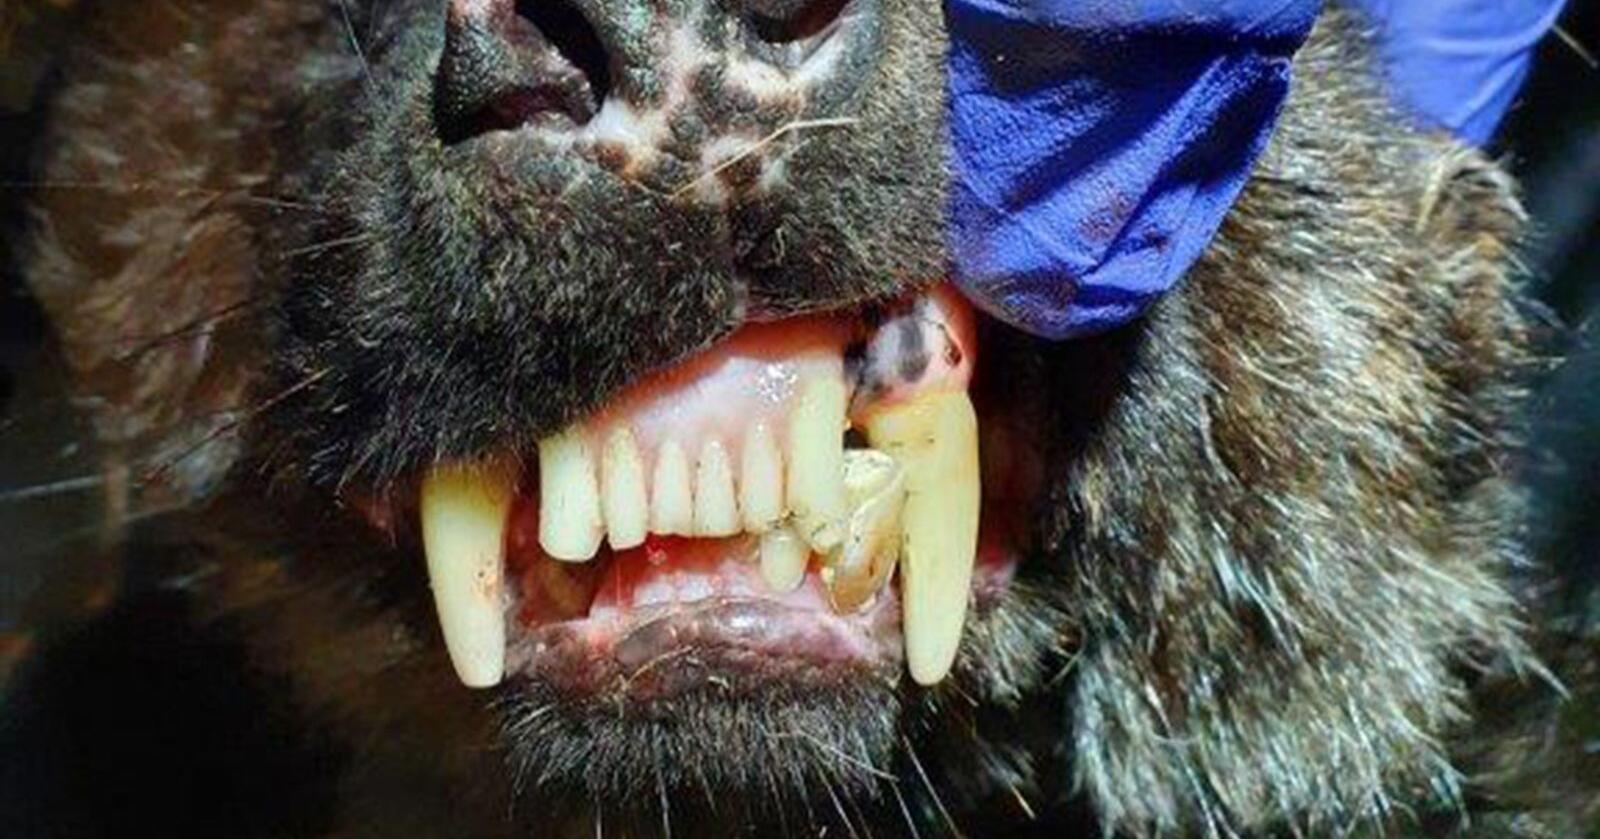 Jervekjeft: Det var tydelig tannslitasje hos den eldste jerven som ble undersøkt. Foto: Vegar Pedersen / Statens naturoppsyn